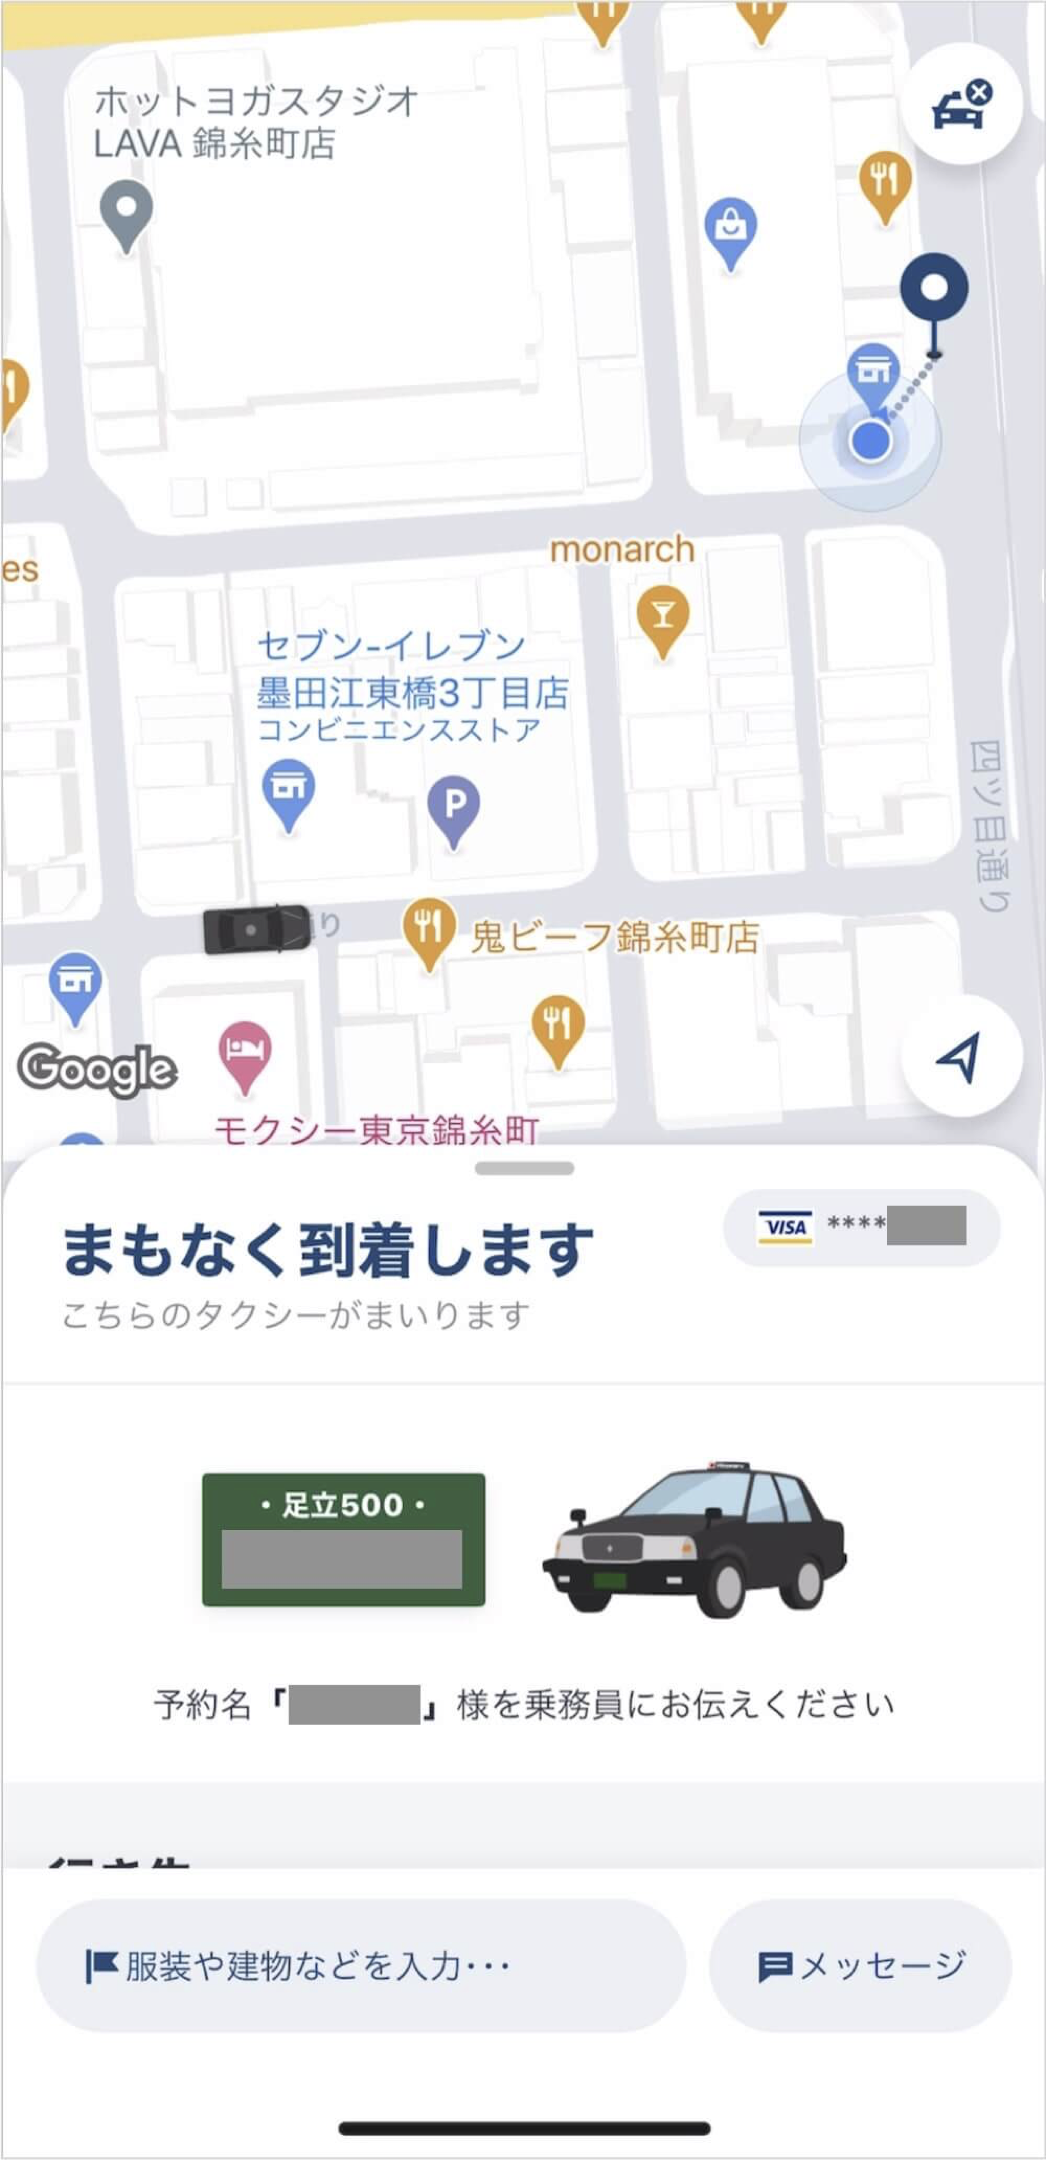 GO(ゴー)でタクシー予約する方法